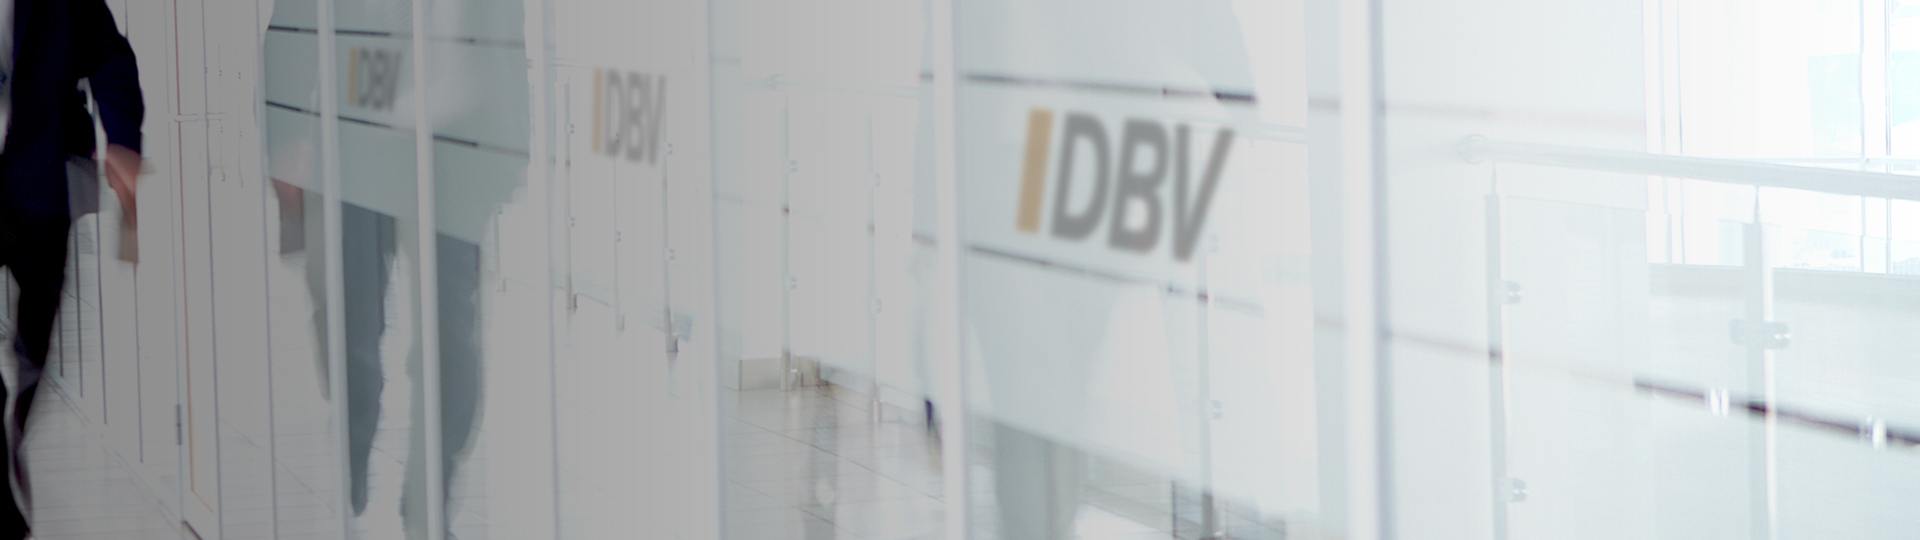 Berufsunfähigkeitsversicherung | DBV Hannover Hornig & Knoch oHG 